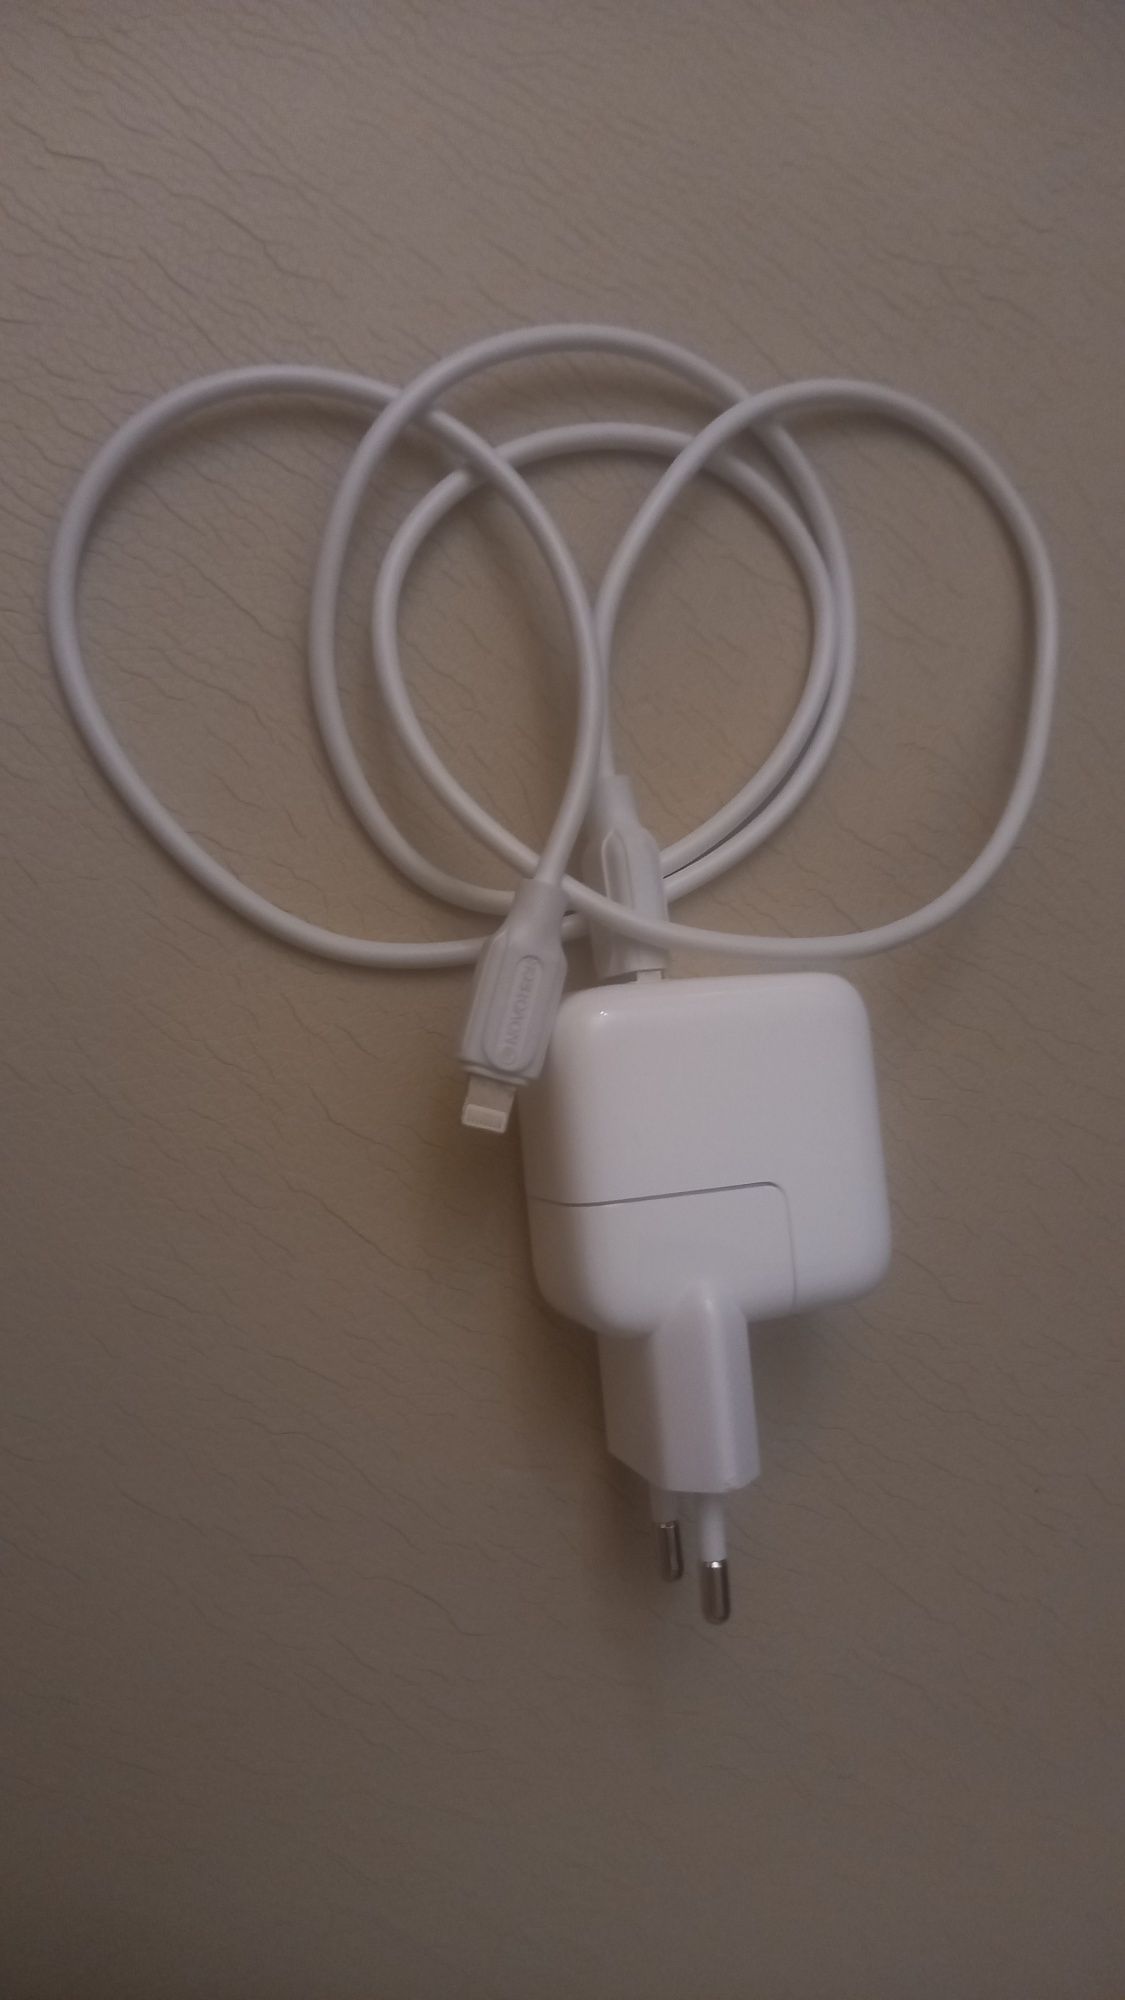 Carregador Apple Lightnig original com cabo USB